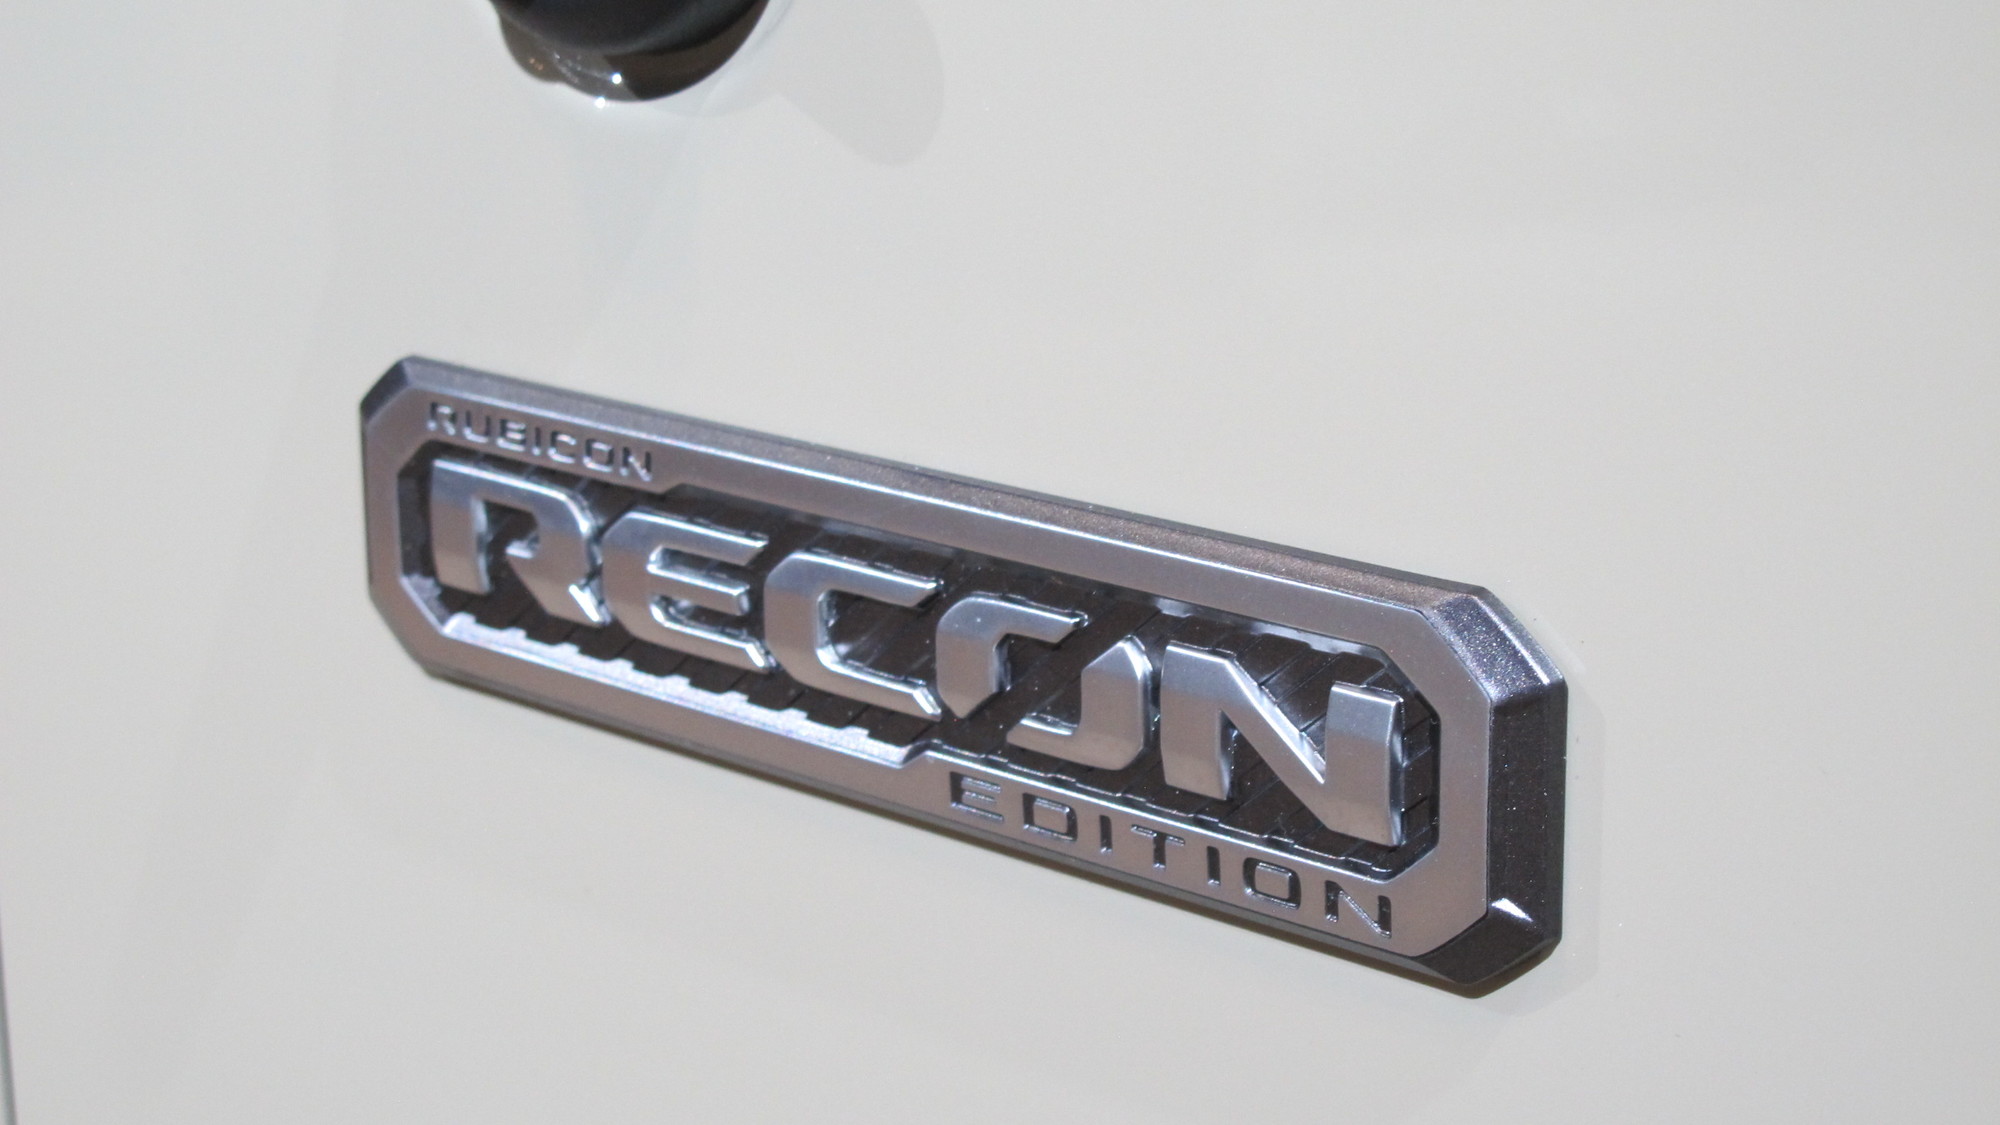 2017 Jeep Wrangler Unlimited Rubicon Recon, 2017 Chicago auto show